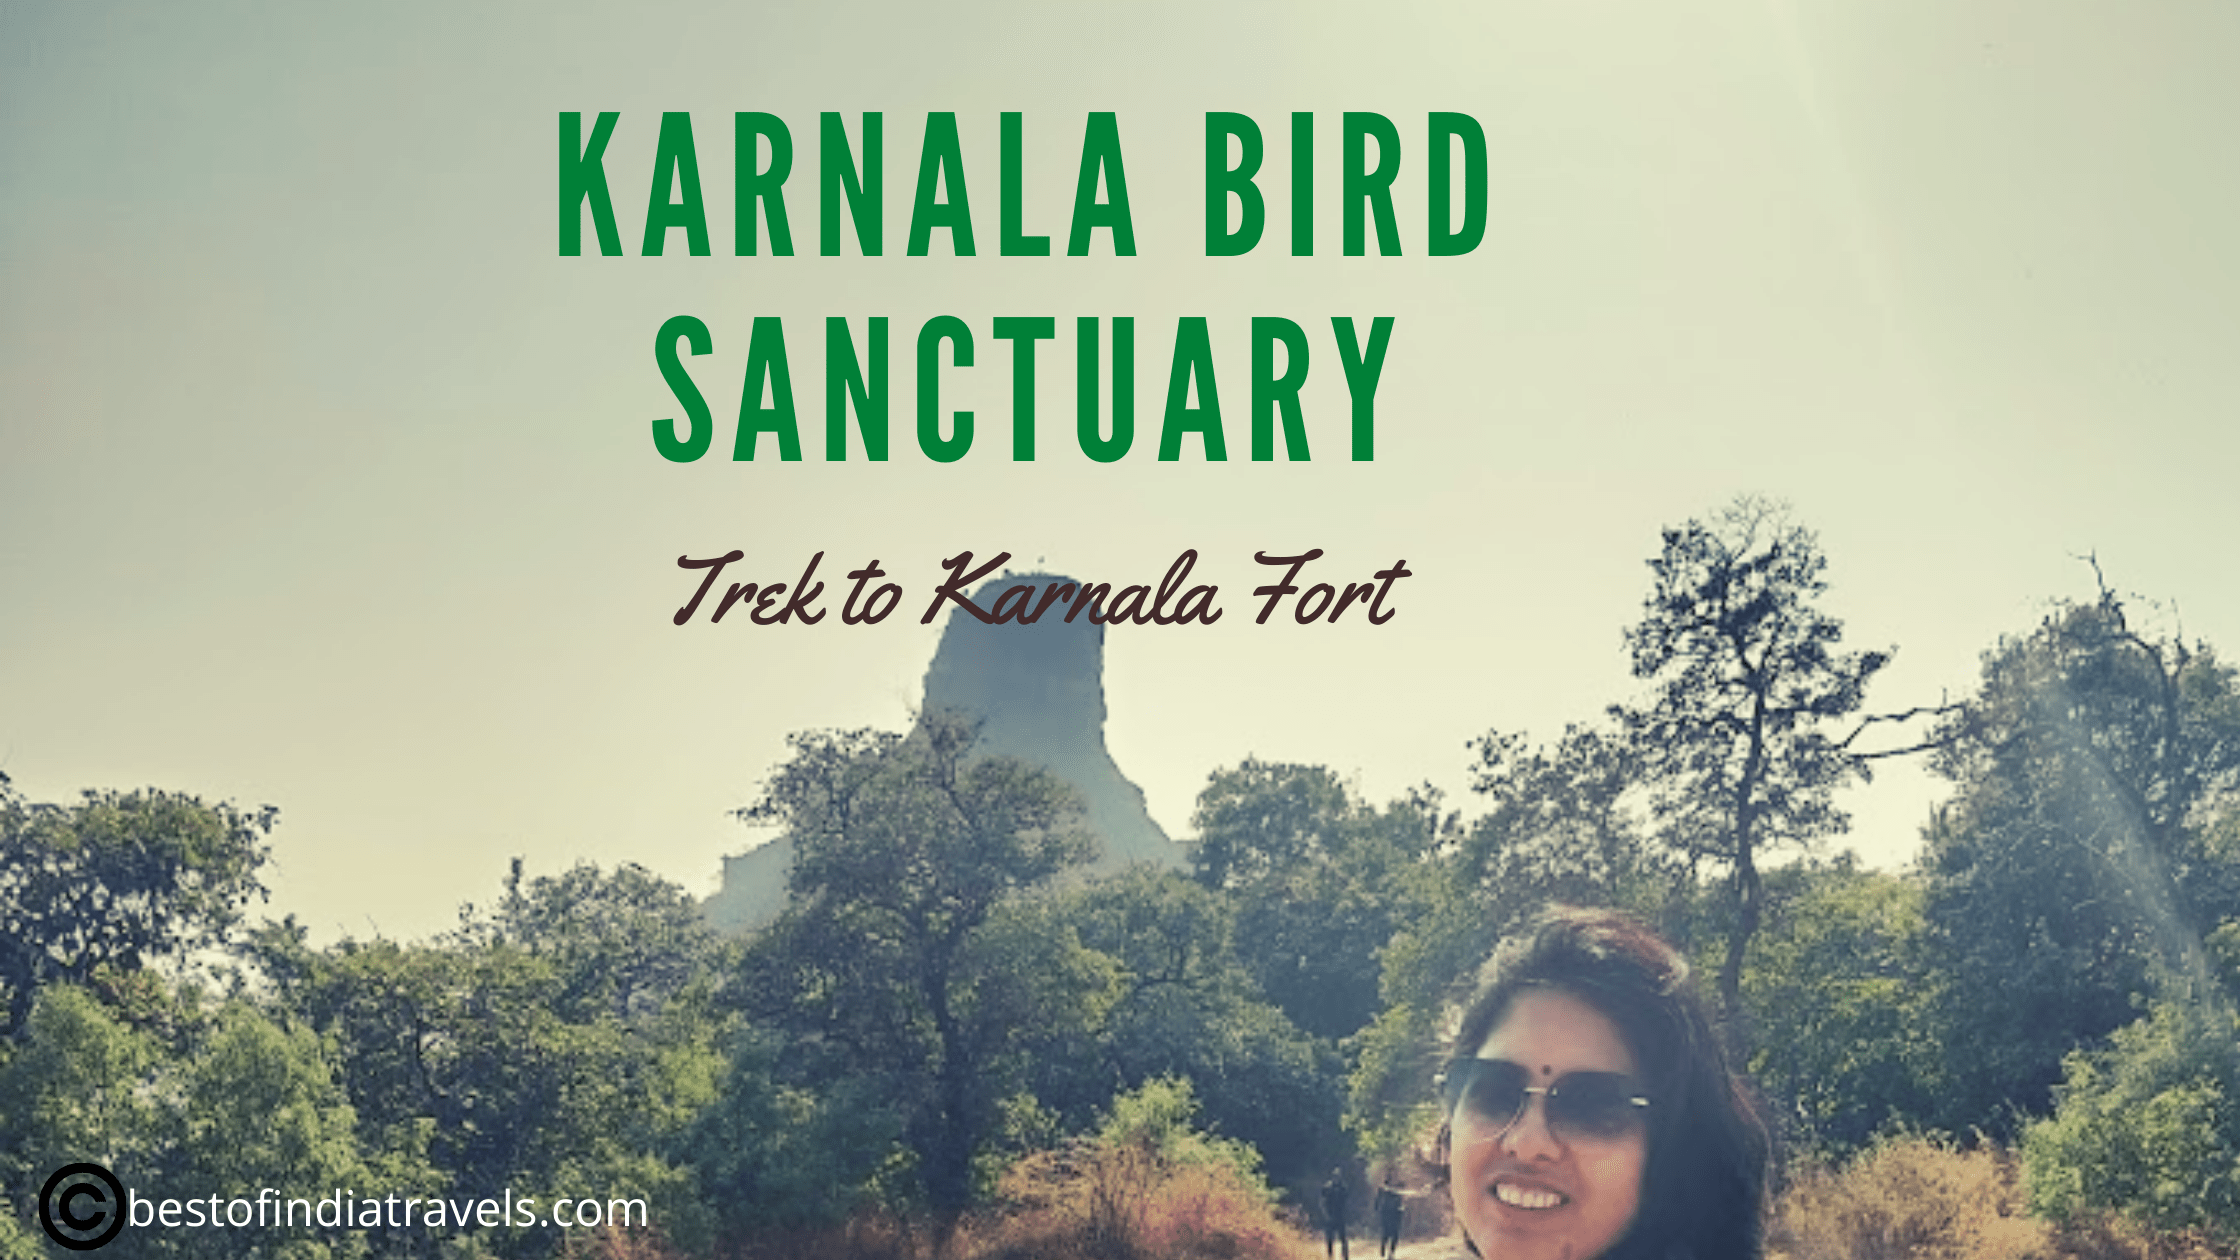 Karnala bird sanctuary Panvel